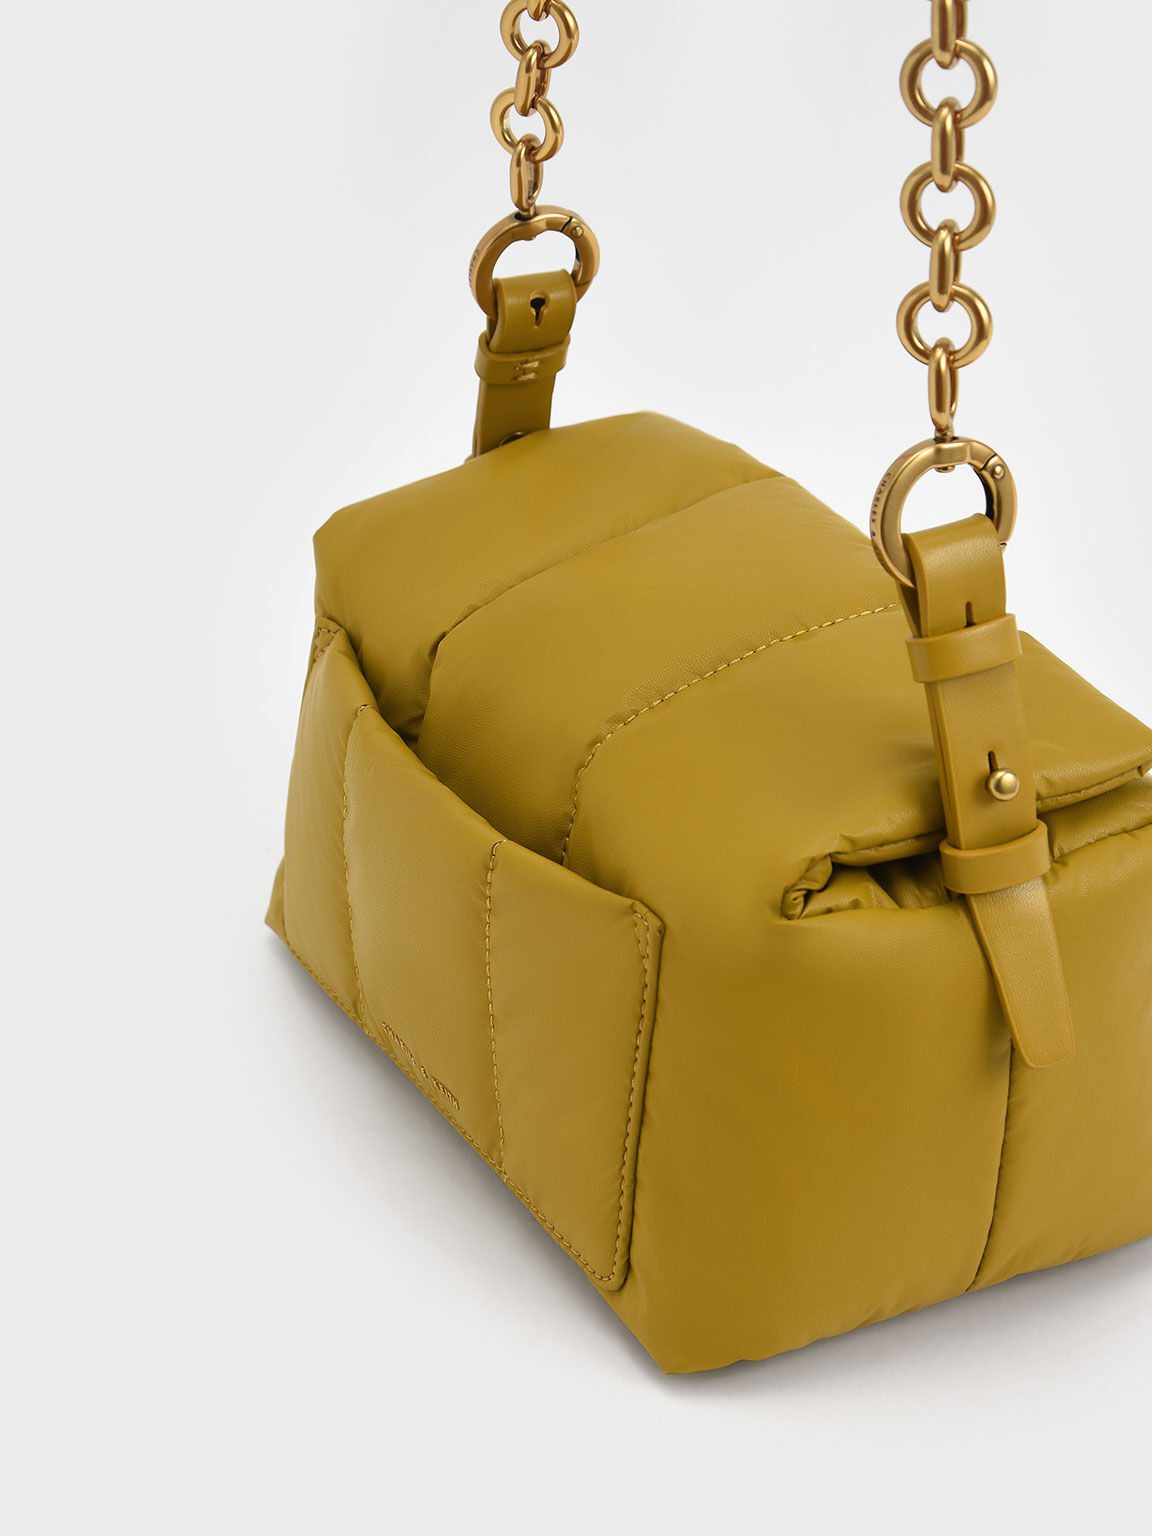 Aralia Two-Tone Chain Handle Boxy Shoulder Bag - Mustard